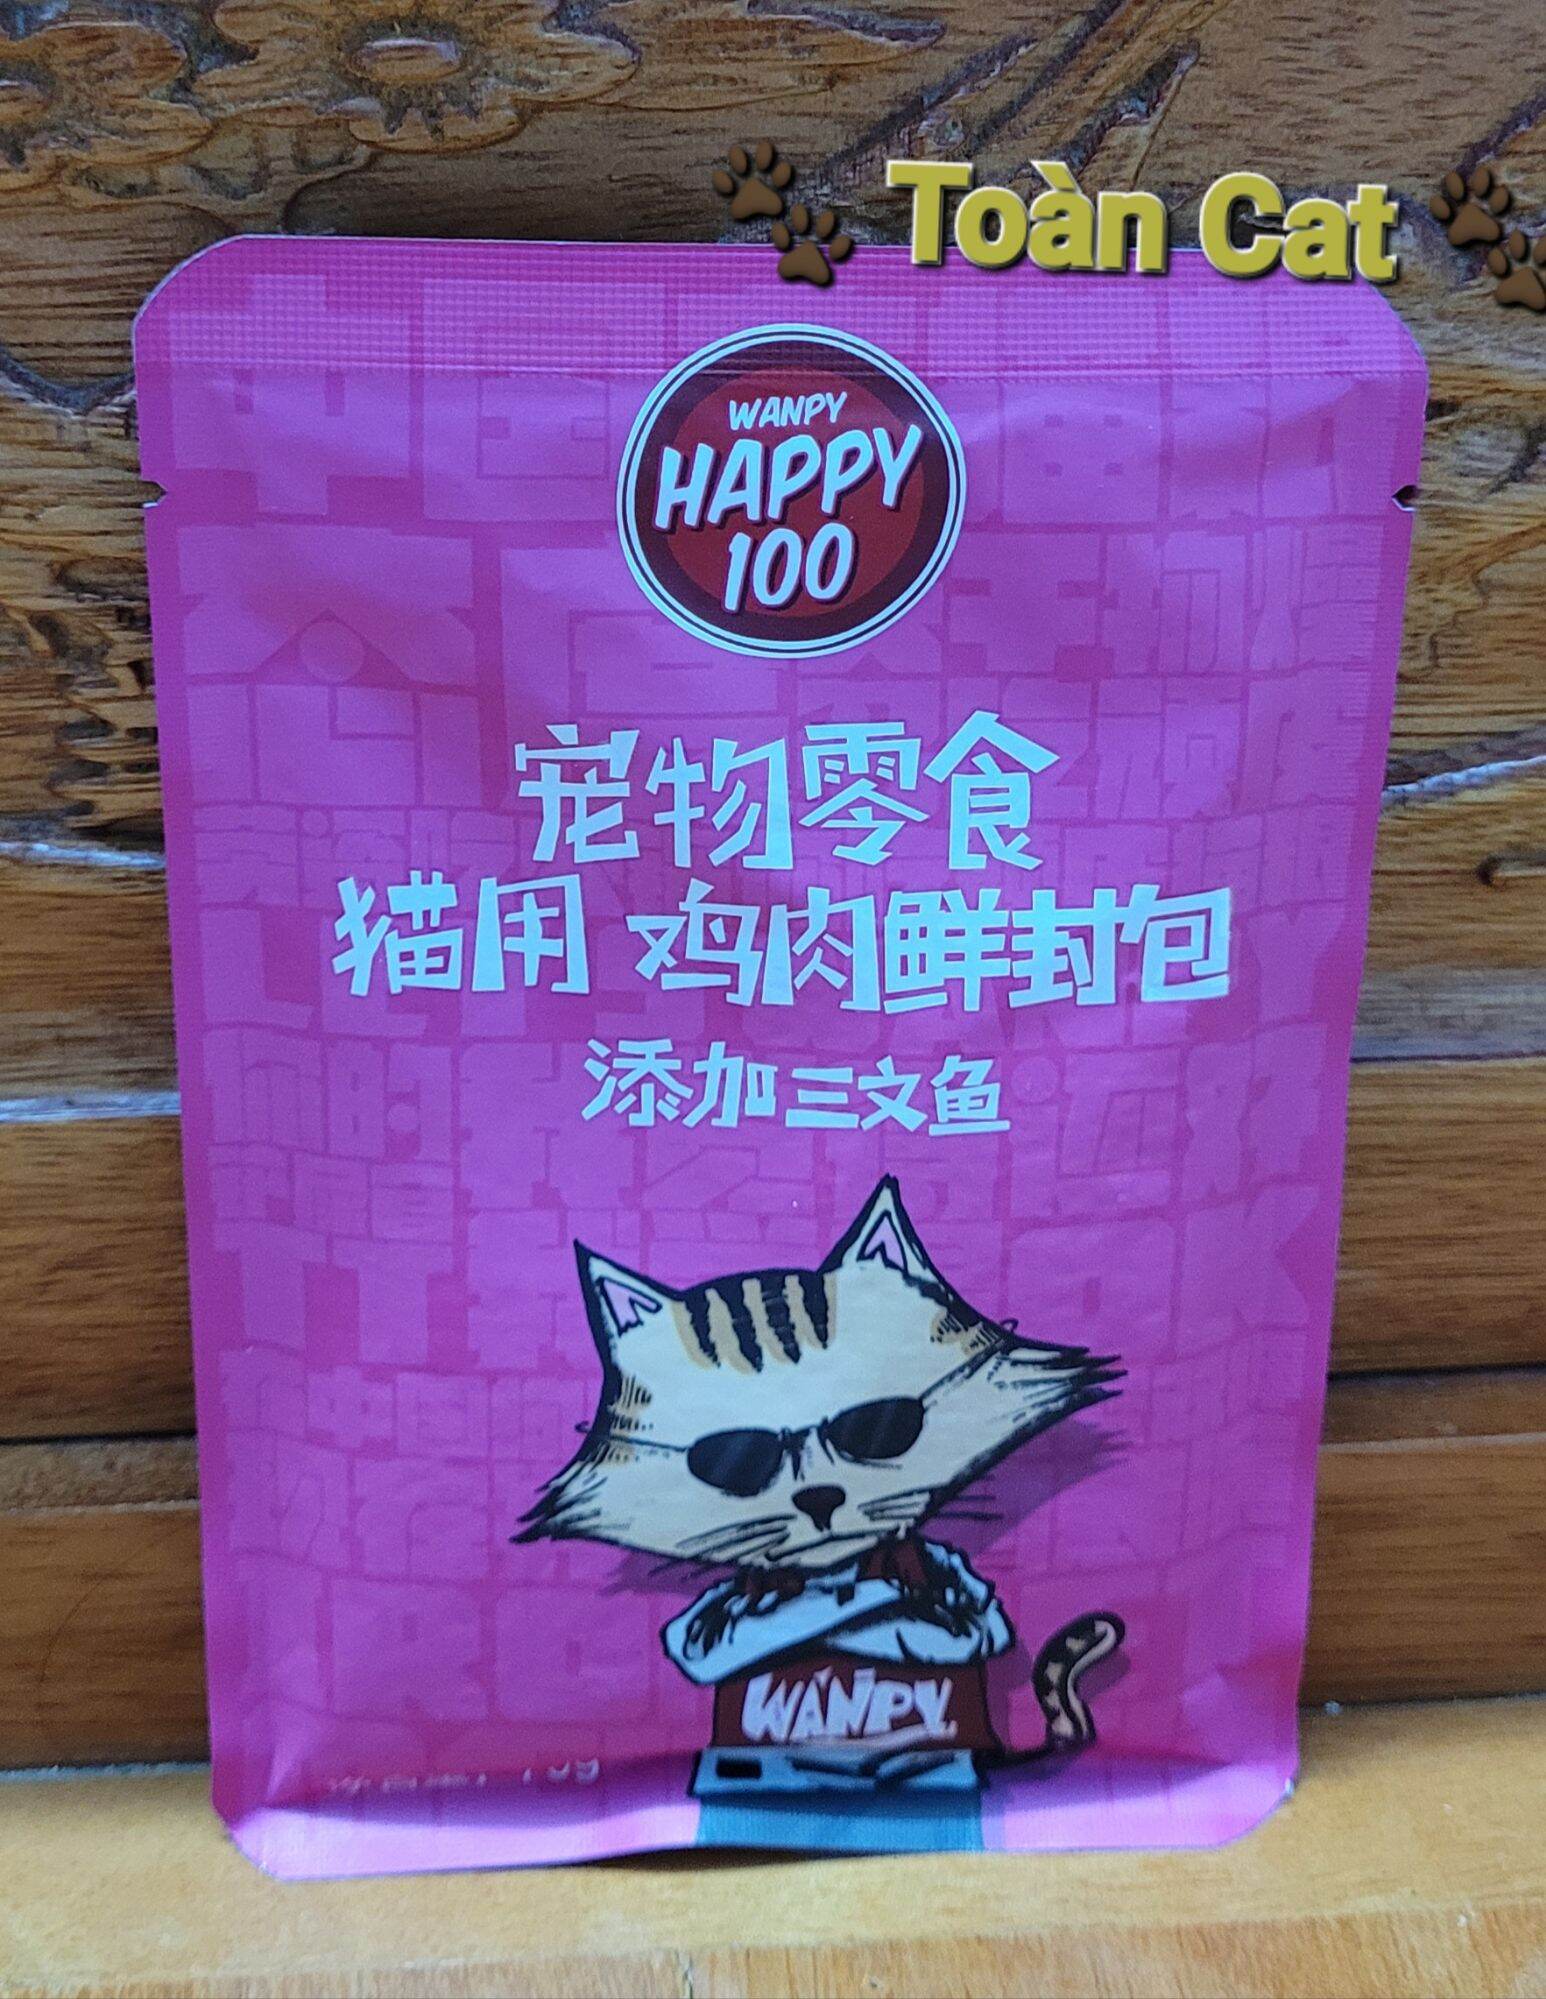 [Q12]Pate Wanpy Happy 100 gói 70gam cho mèo